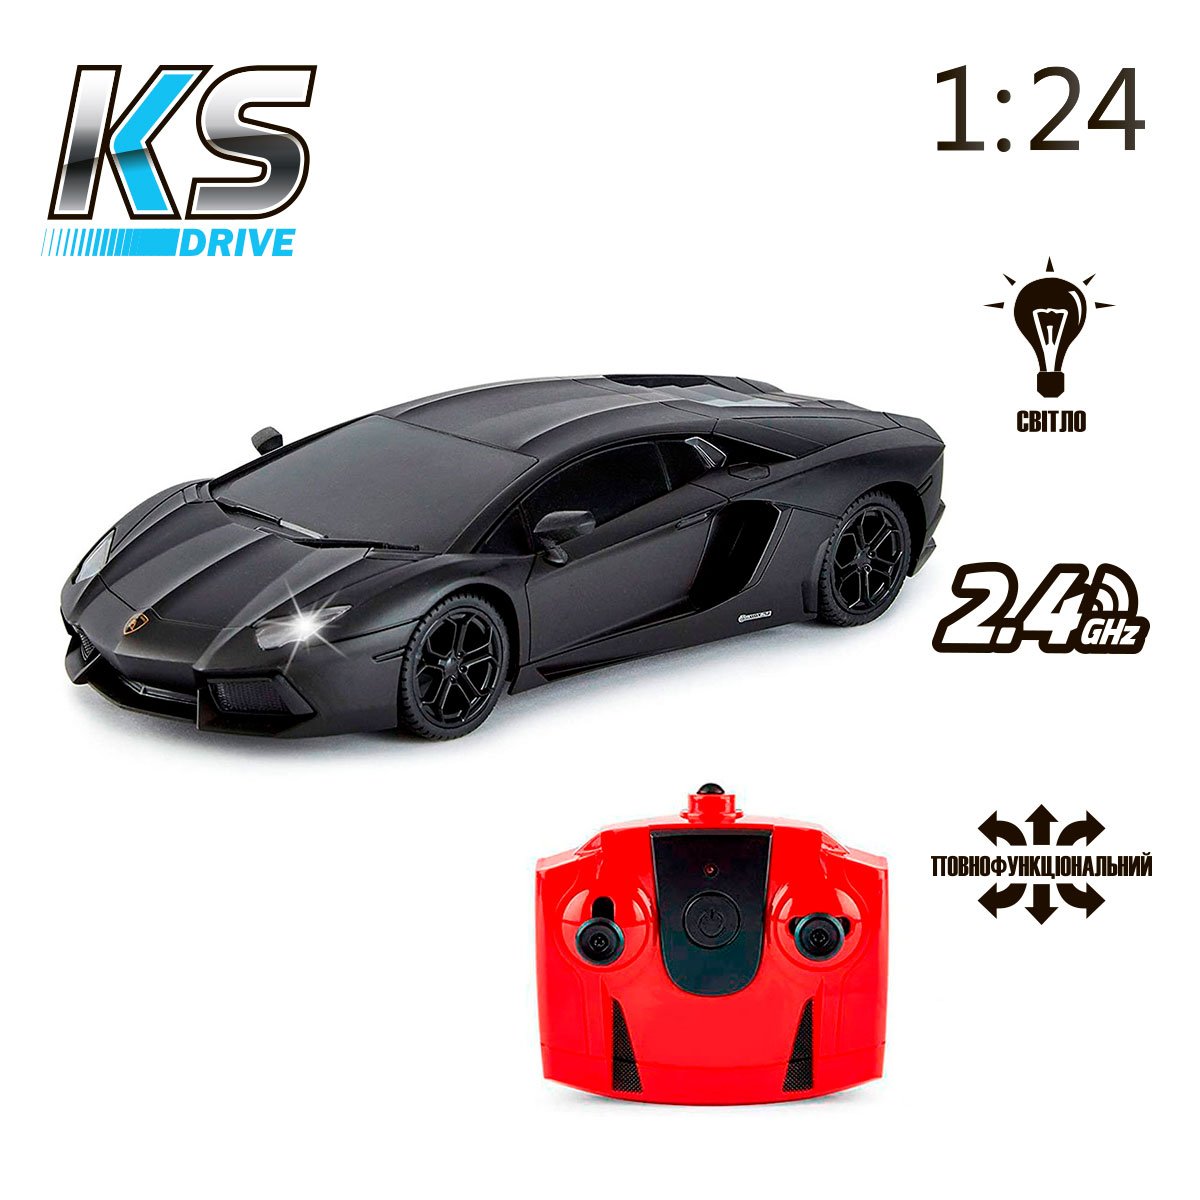 Автомобіль KS Drive на р/к Lamborghini Aventador LP 700-4, 1:24, 2.4Ghz чорний (124GLBB) - фото 6